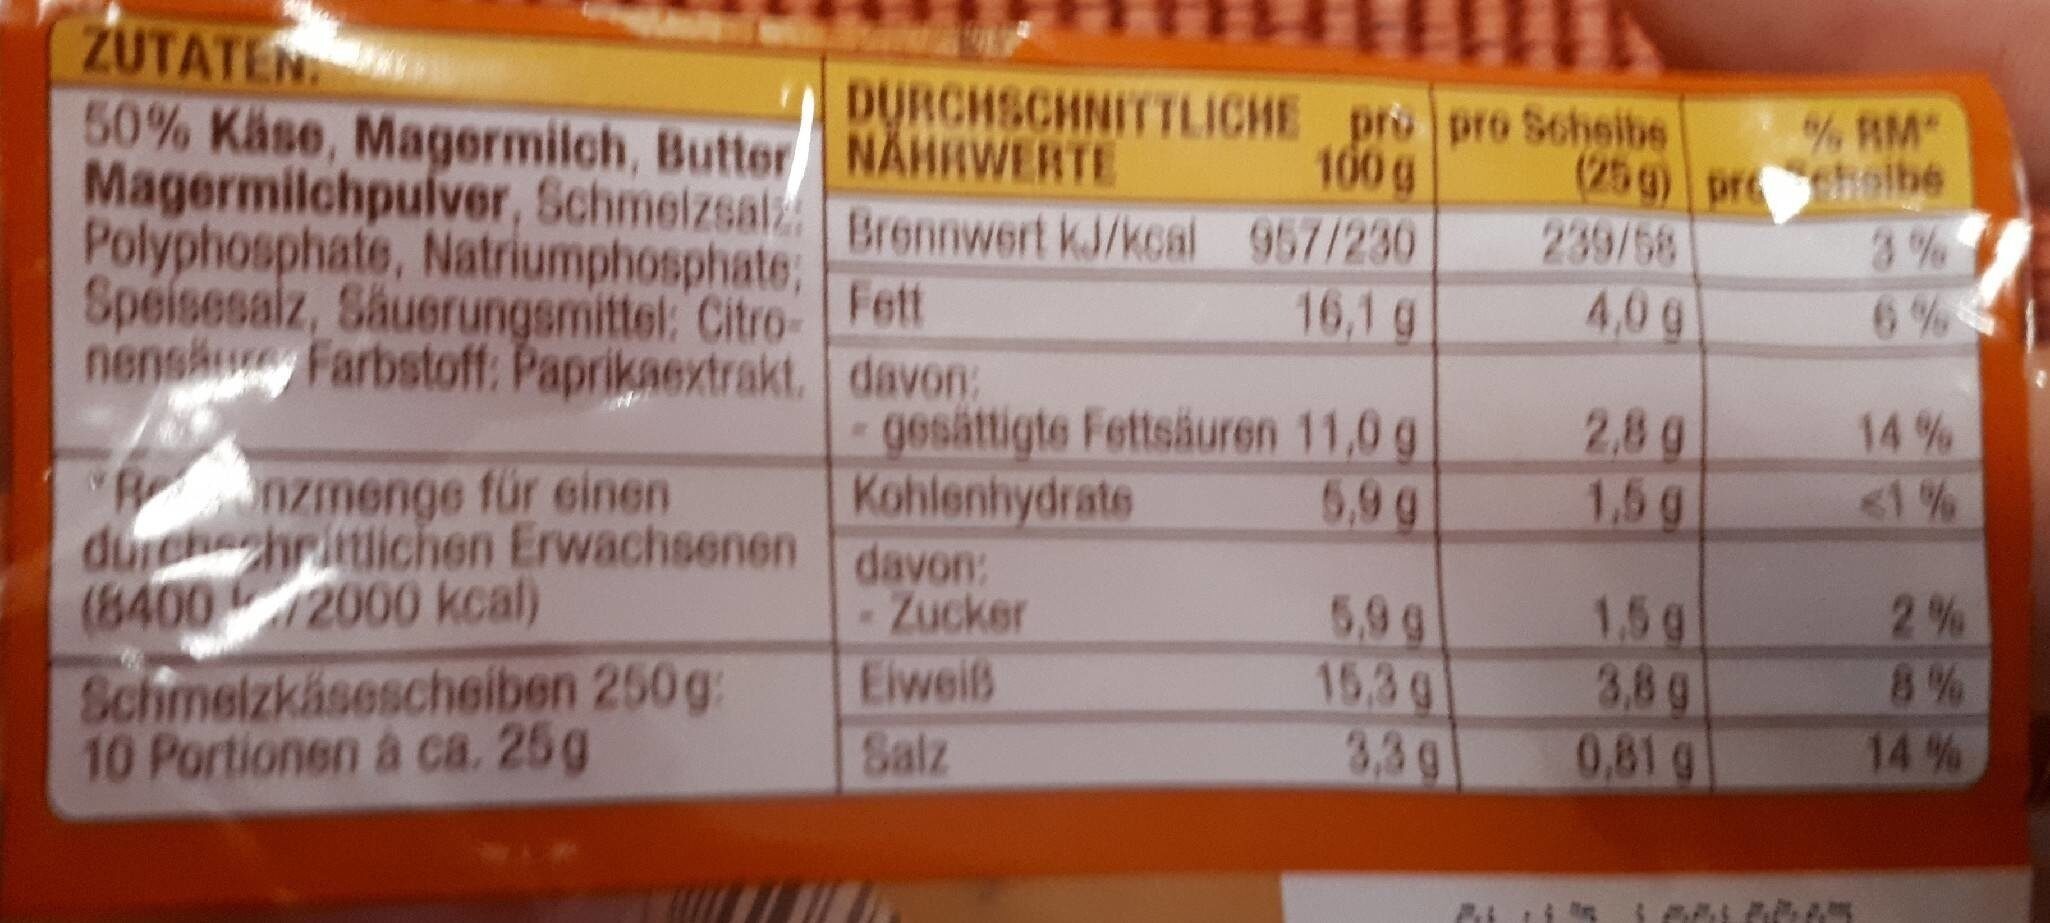 Toast Schmelzkäse - Nutrition facts - de